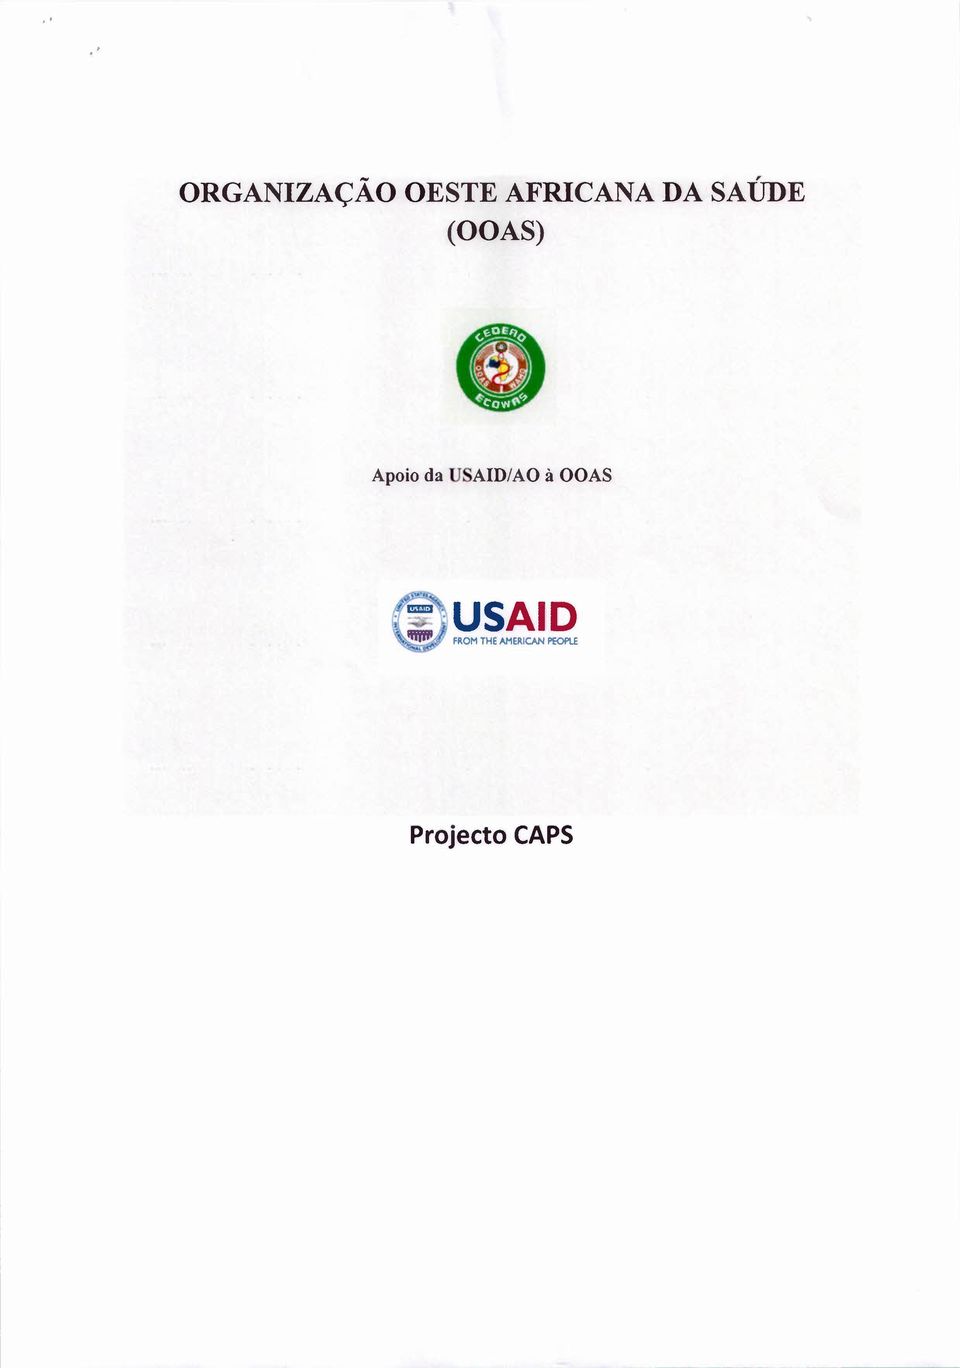 Apoio da USAID/AO à OOAS